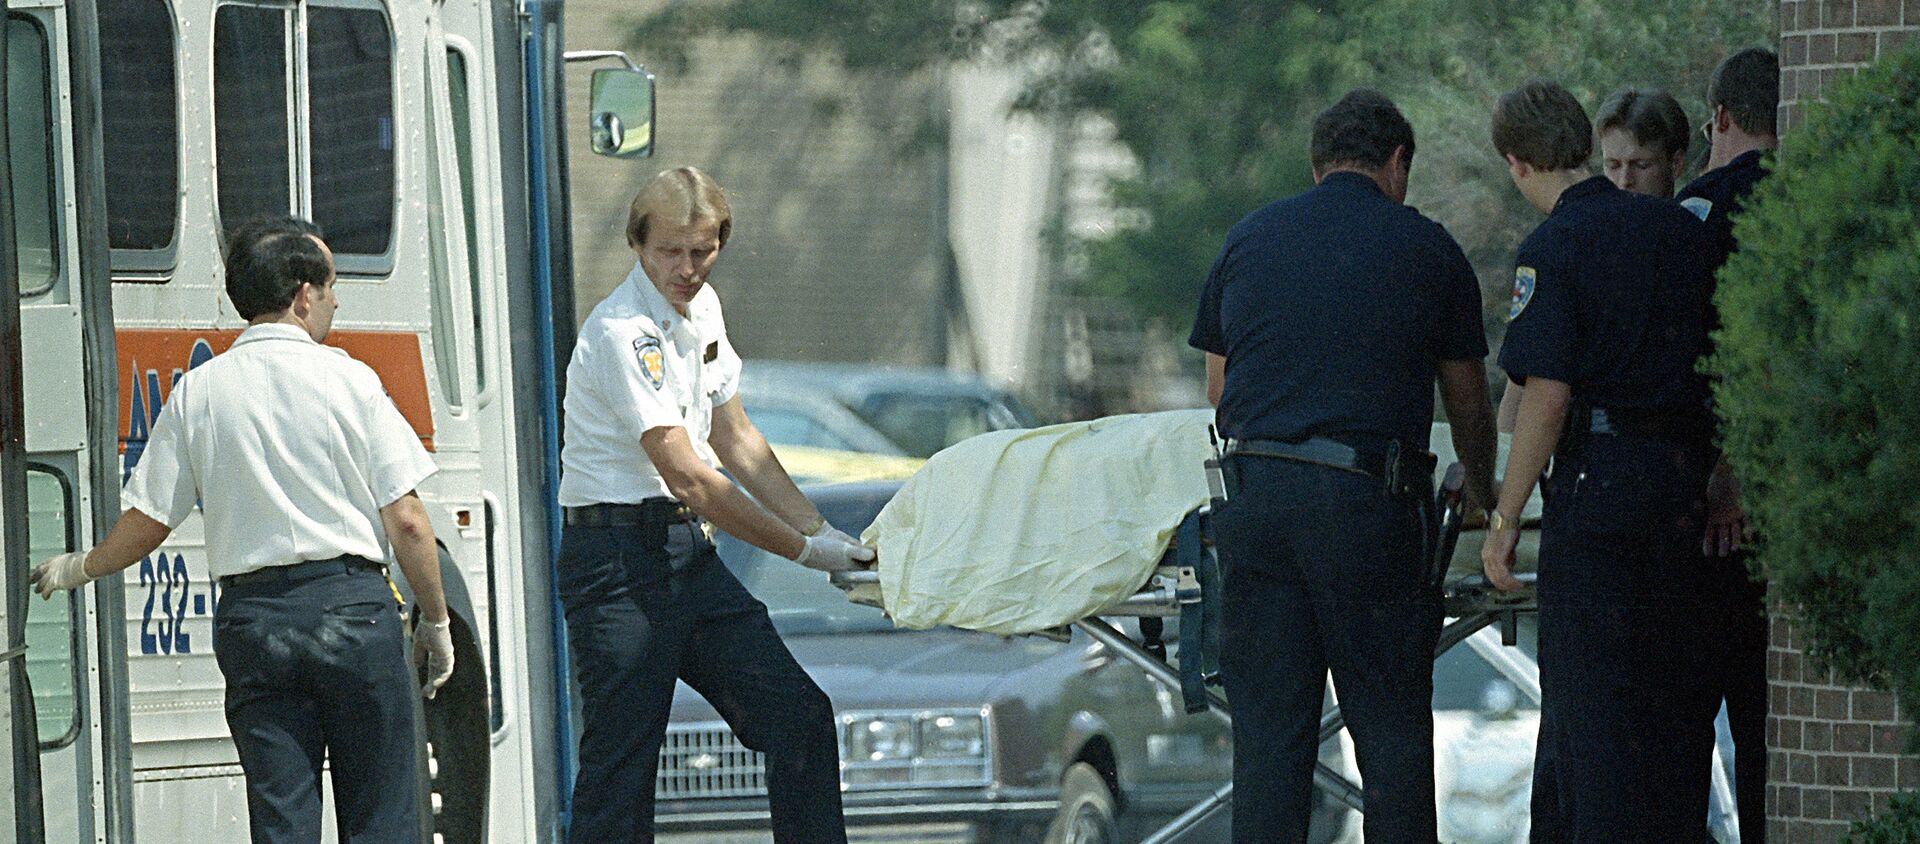 Los policías en el lugar del tiroteo en la oficina postal en Edmond, Oklahoma en 1986 (Archivo) - Sputnik Mundo, 1920, 13.06.2016